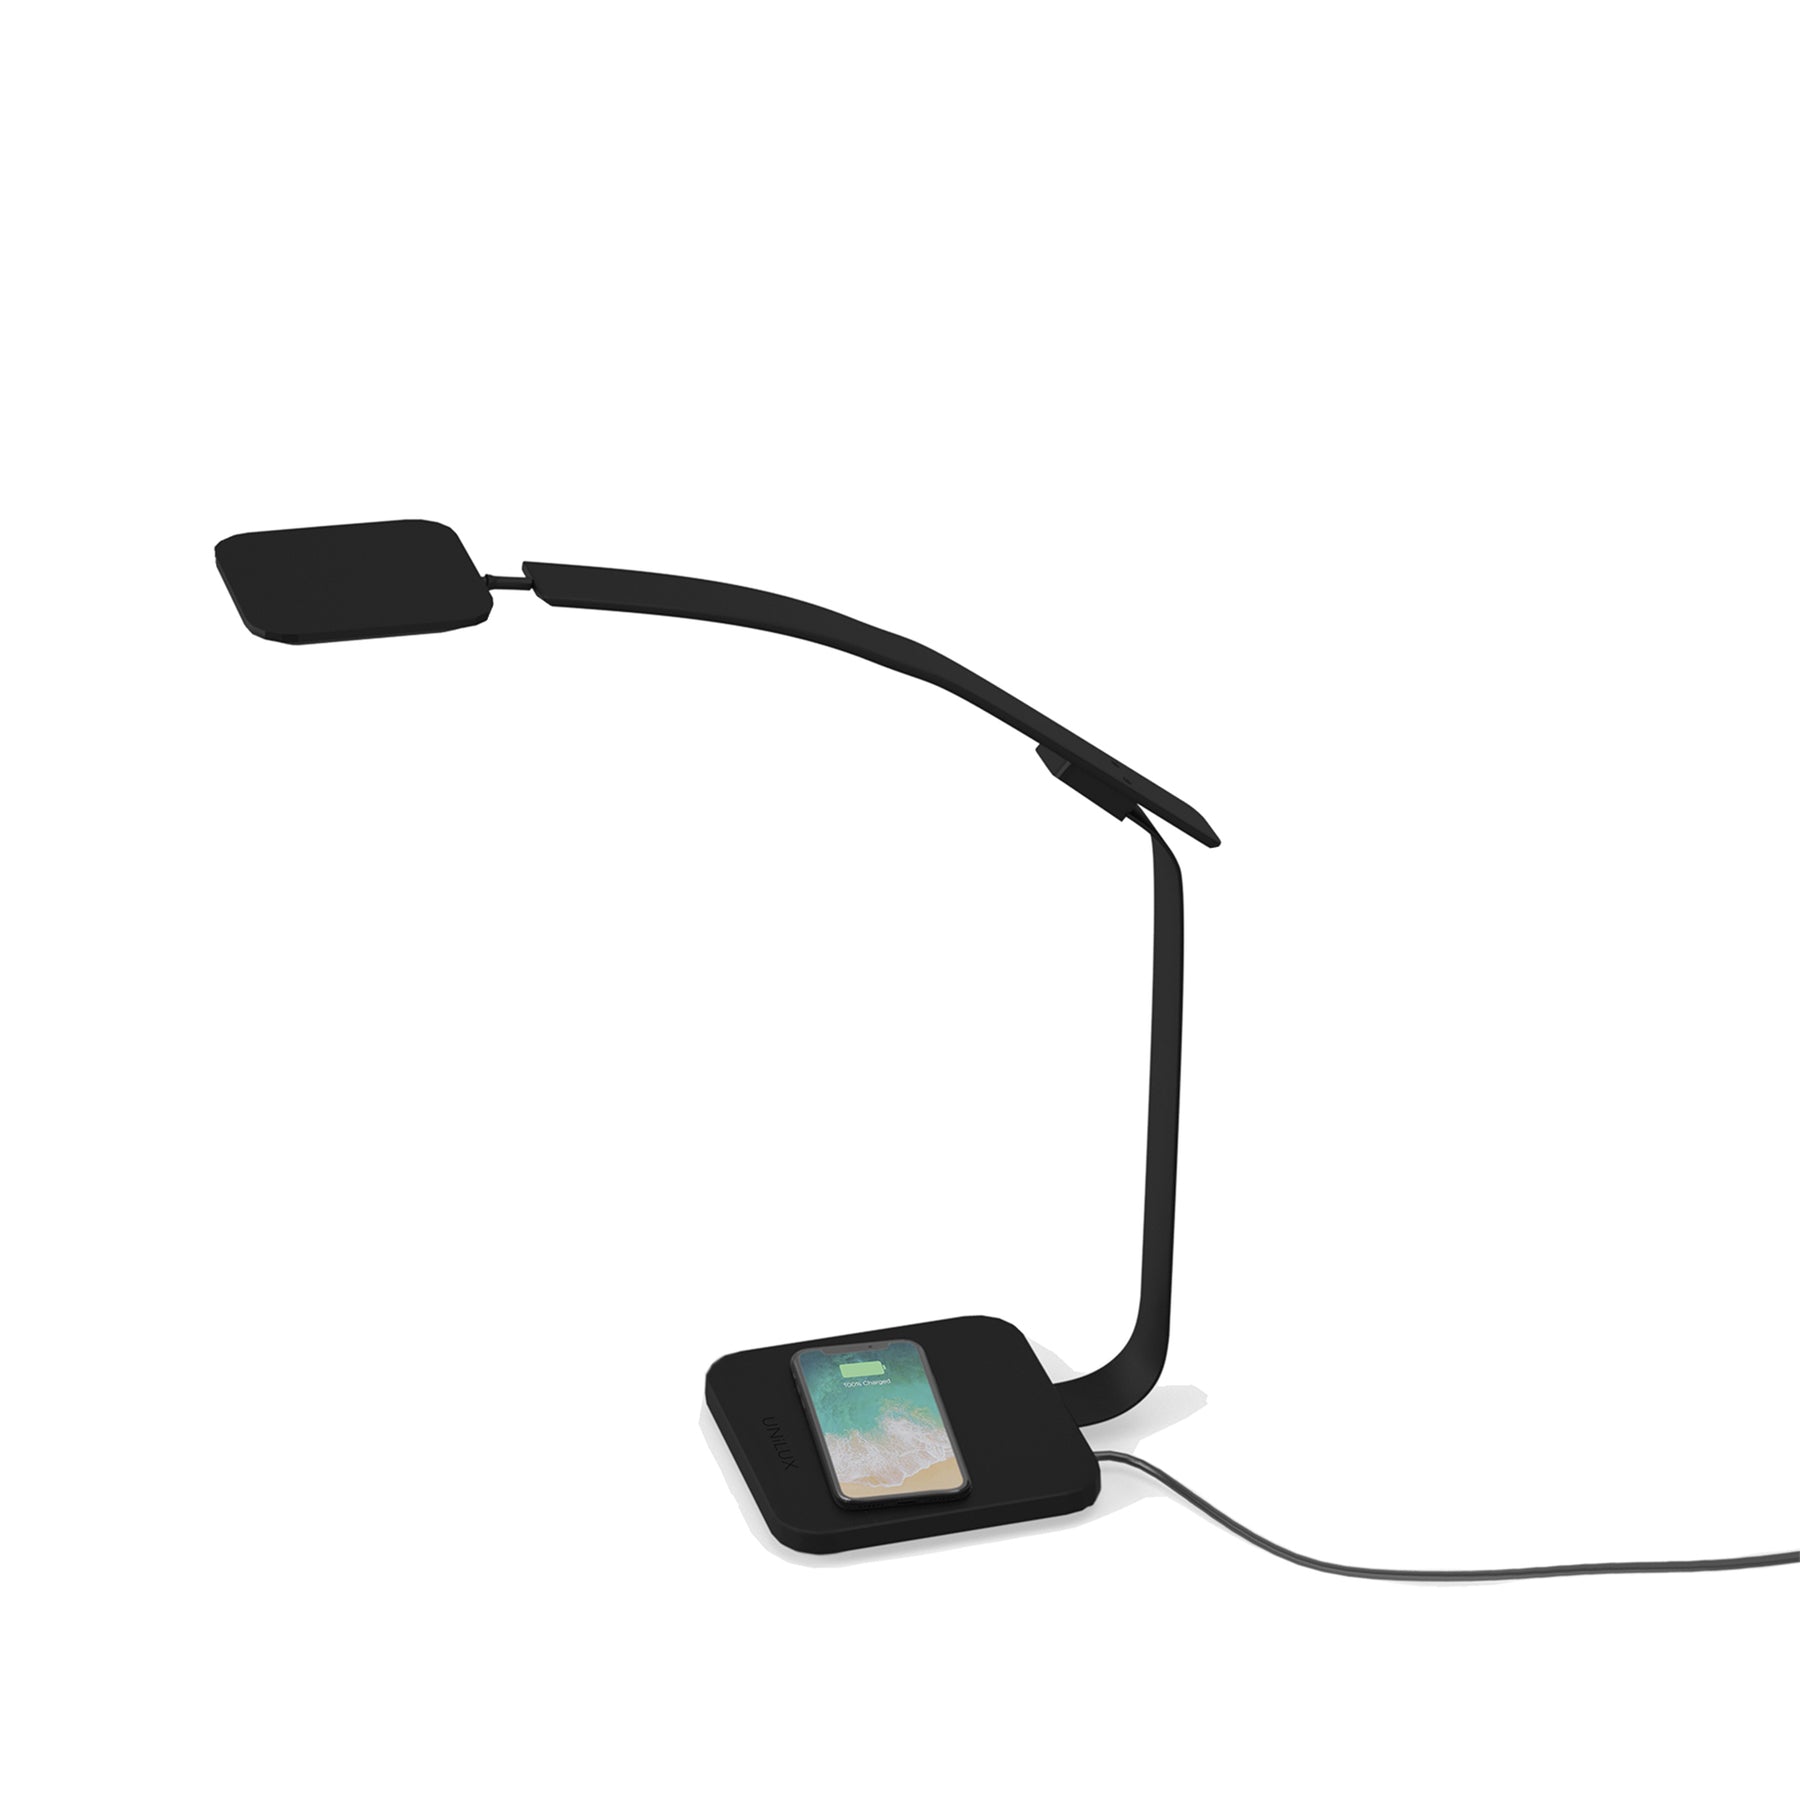 Schreibtischlampe Timelight schwarz für eine optimale Beleuchtung im Homeoffice